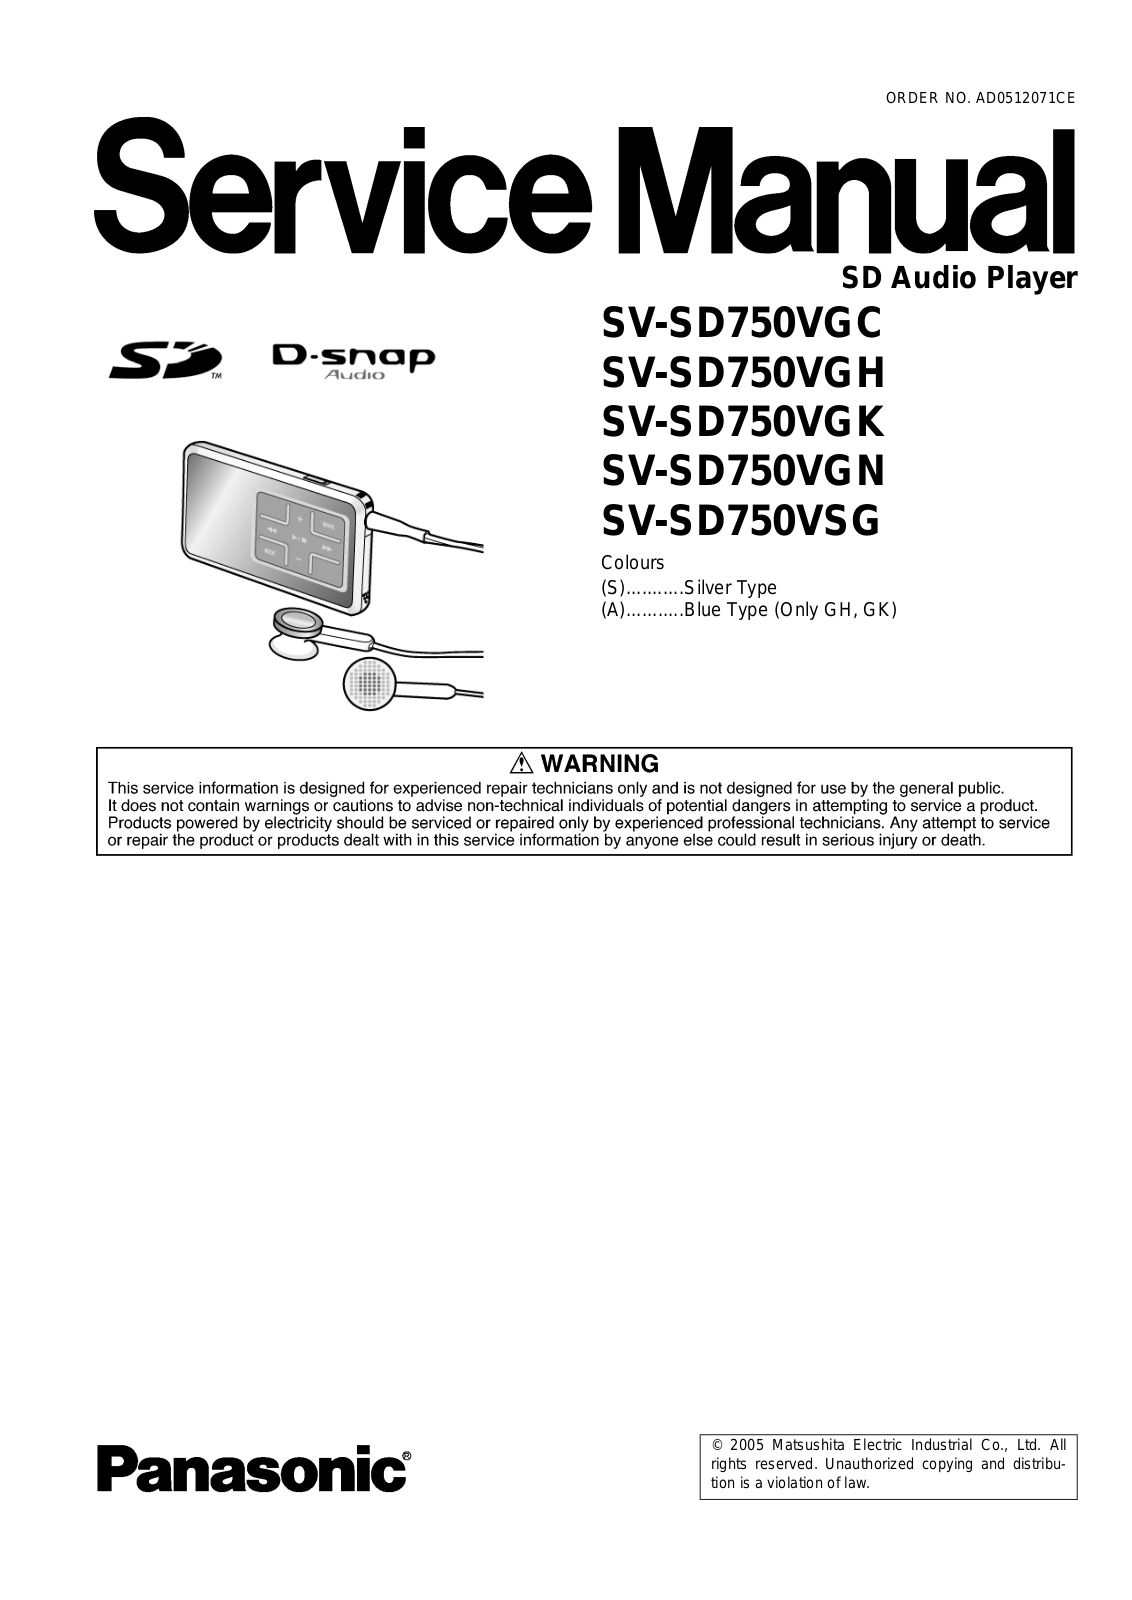 Panasonic SVSD-750-VGC, SVSD-750-VGH, SVSD-750-VGK, SVSD-750-VGN, SVSD-750-VSG Service manual